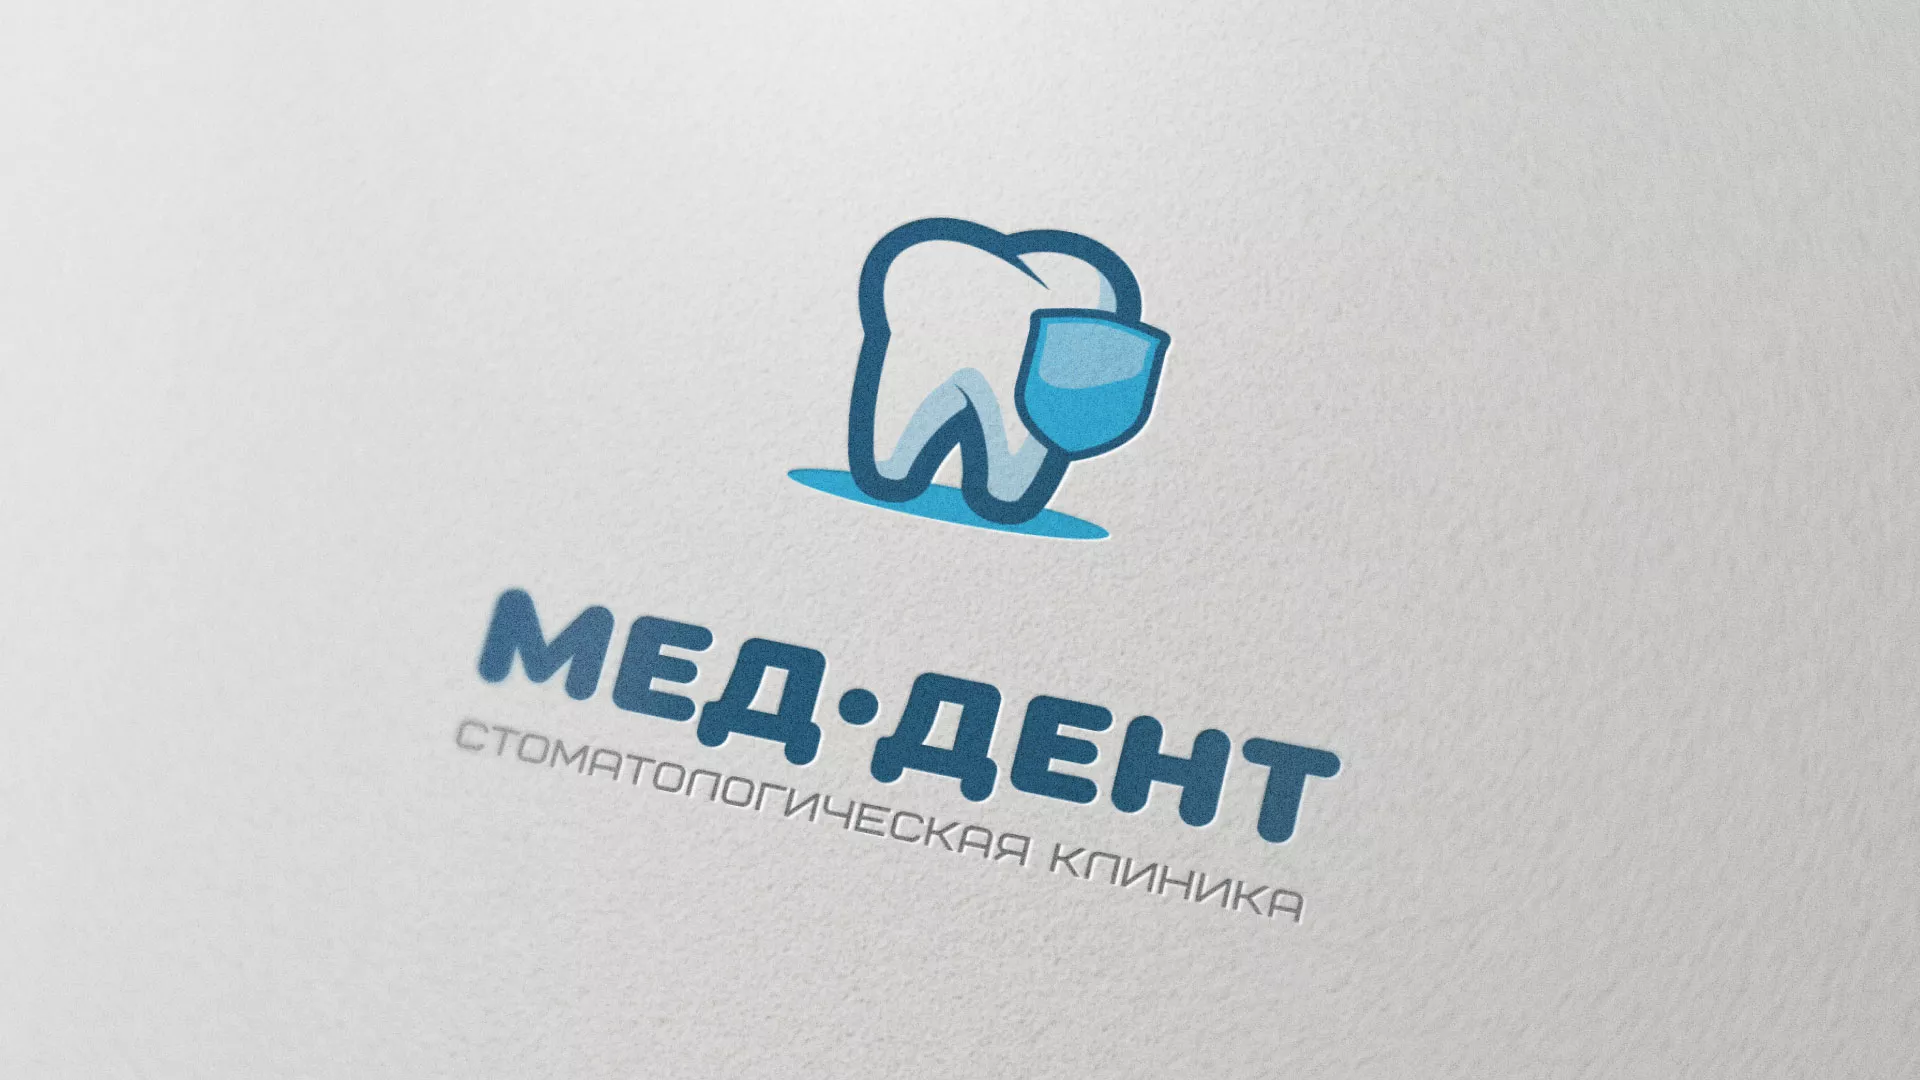 Разработка логотипа стоматологической клиники «МЕД-ДЕНТ» в Череповце